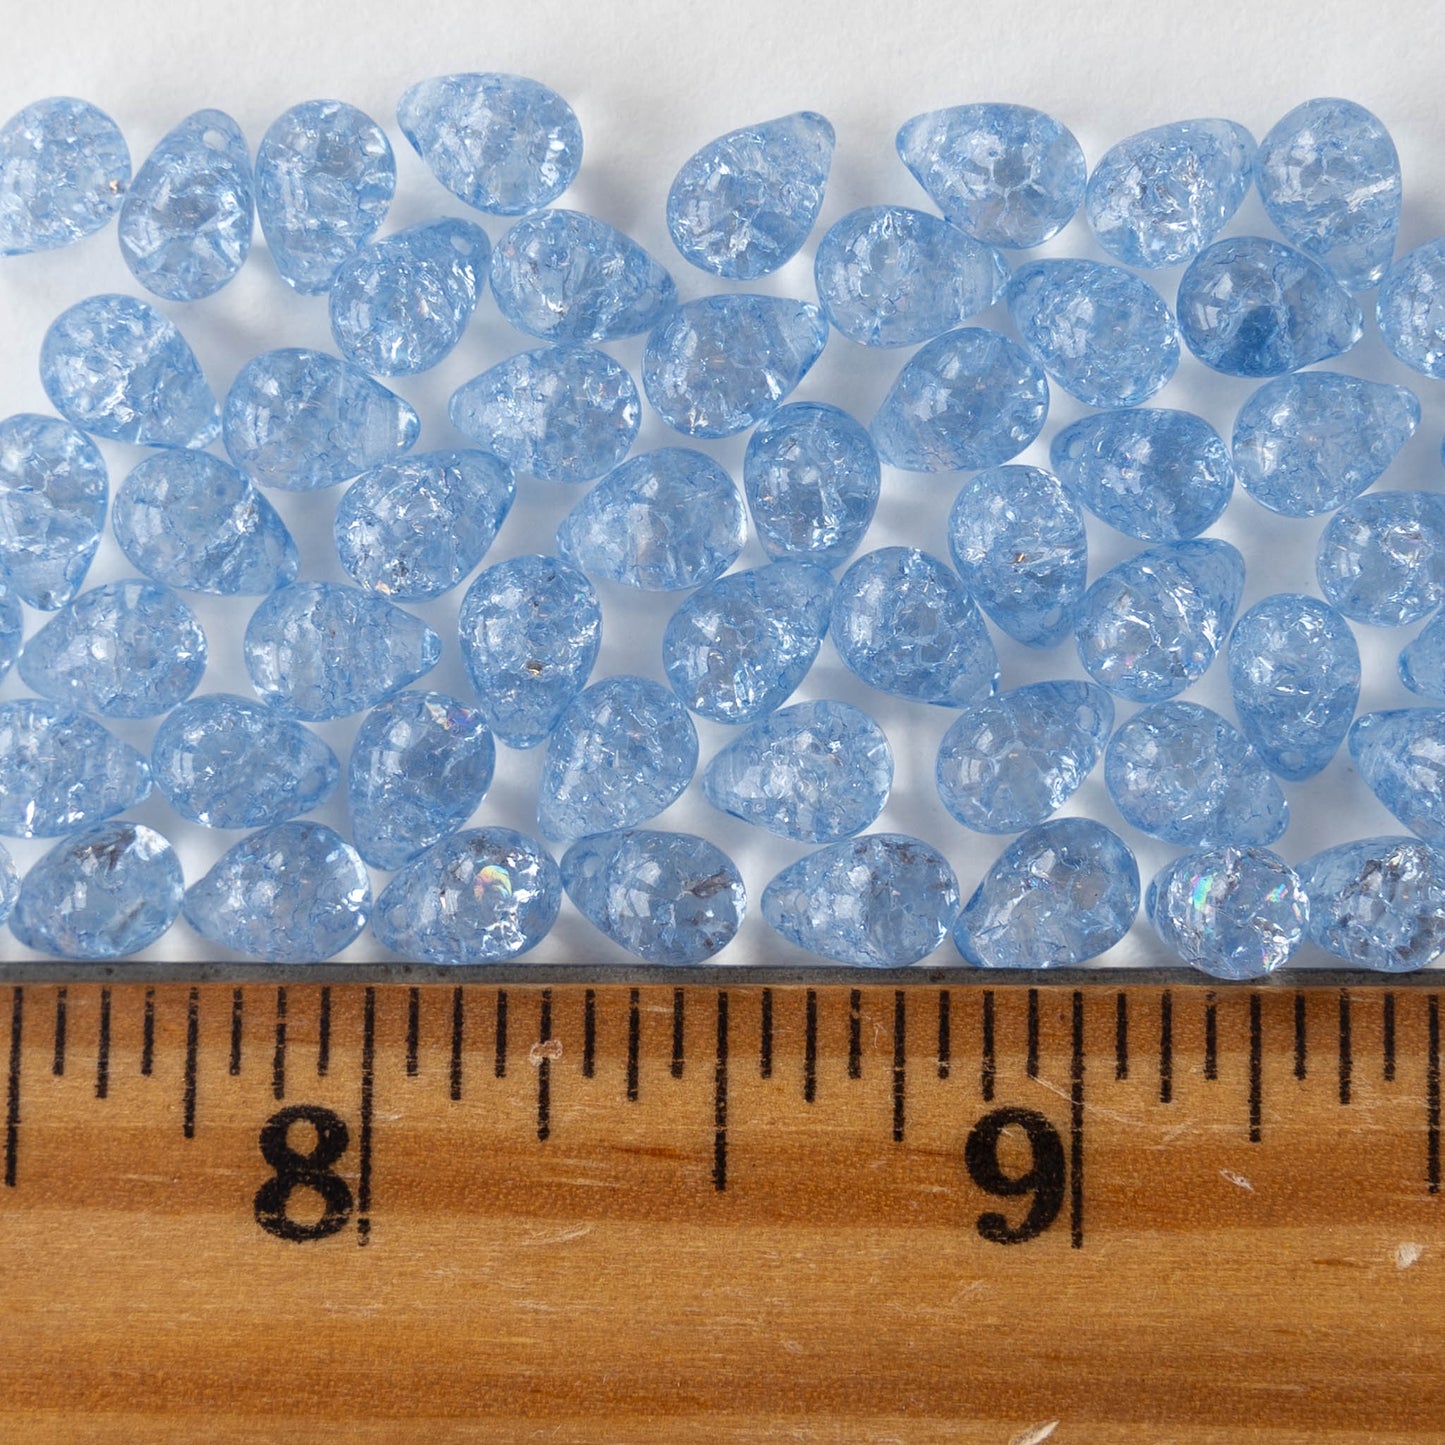 5x7mm Glass Teardrop Beads - Light Blue Crackle - 75 Beads